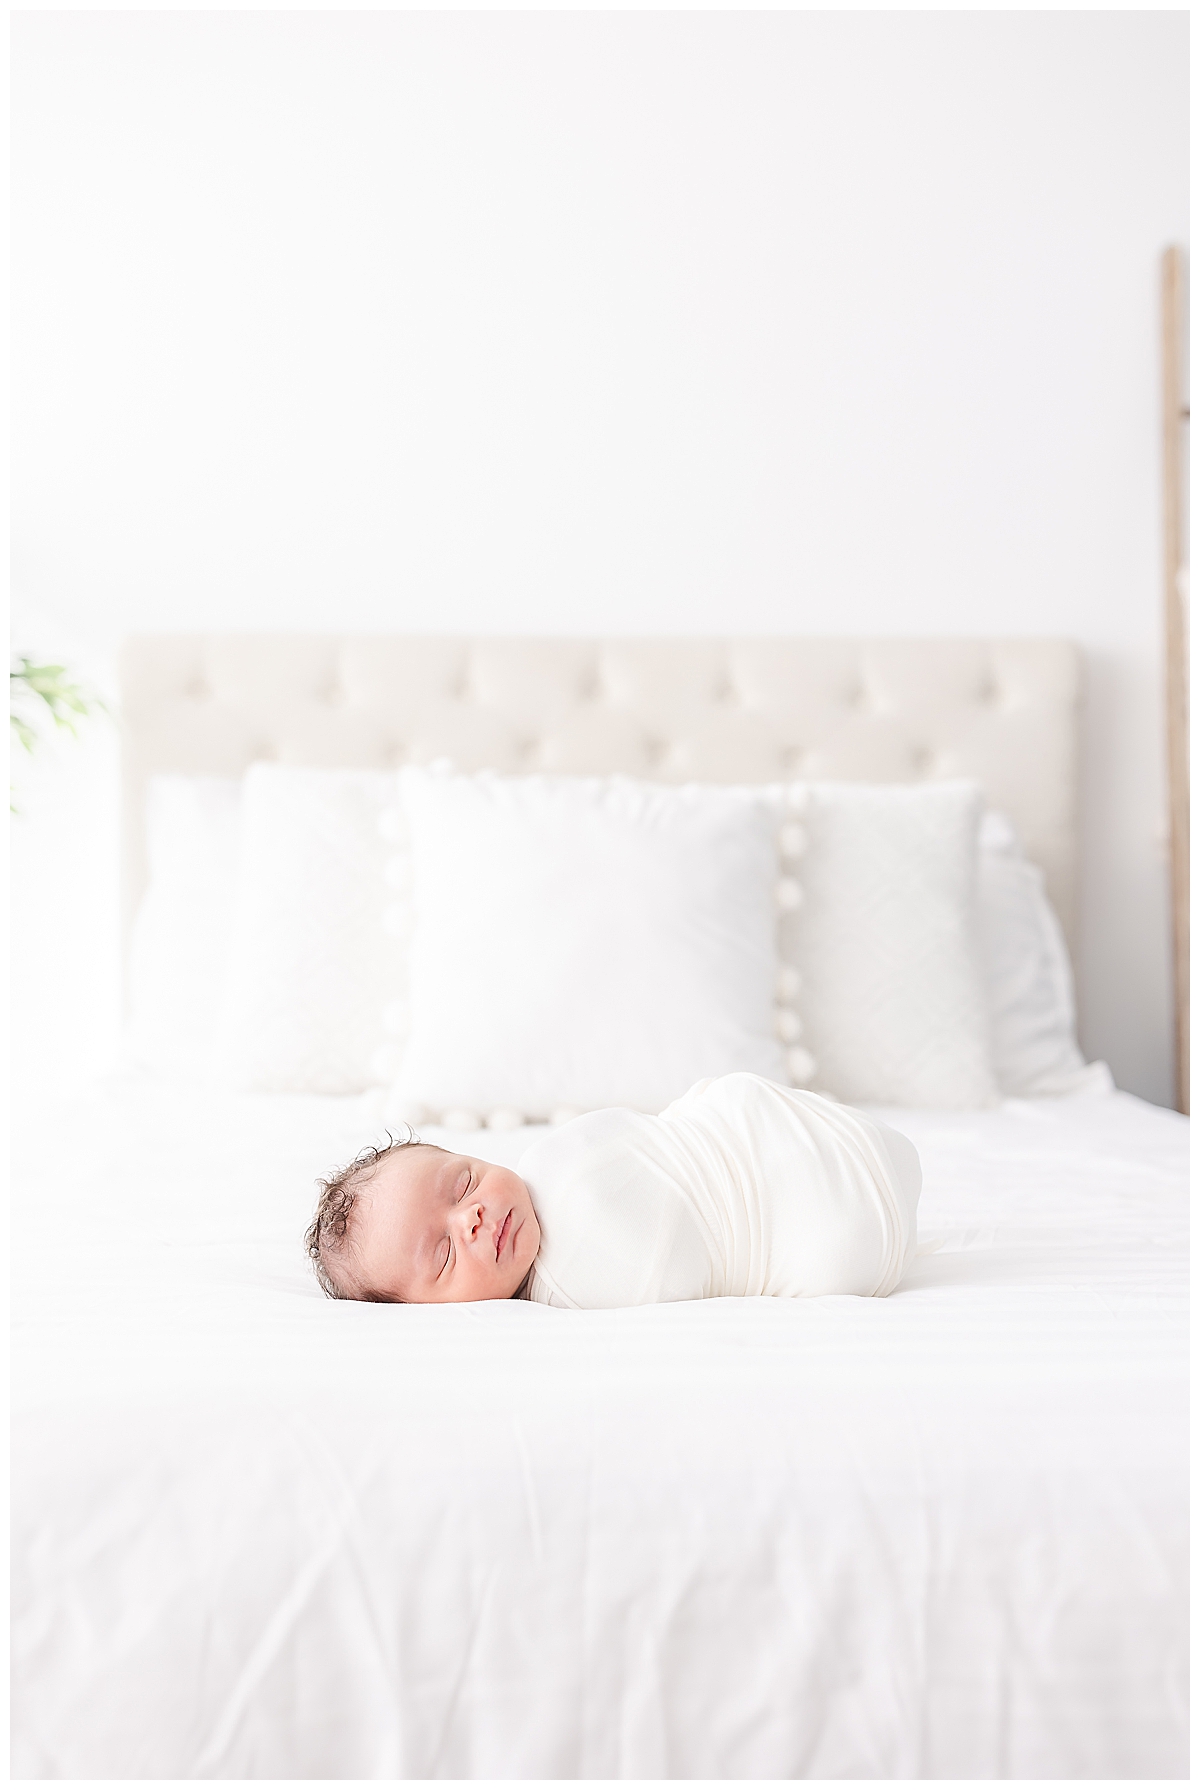 Newborn swaddled in white blanket on upholstered bed